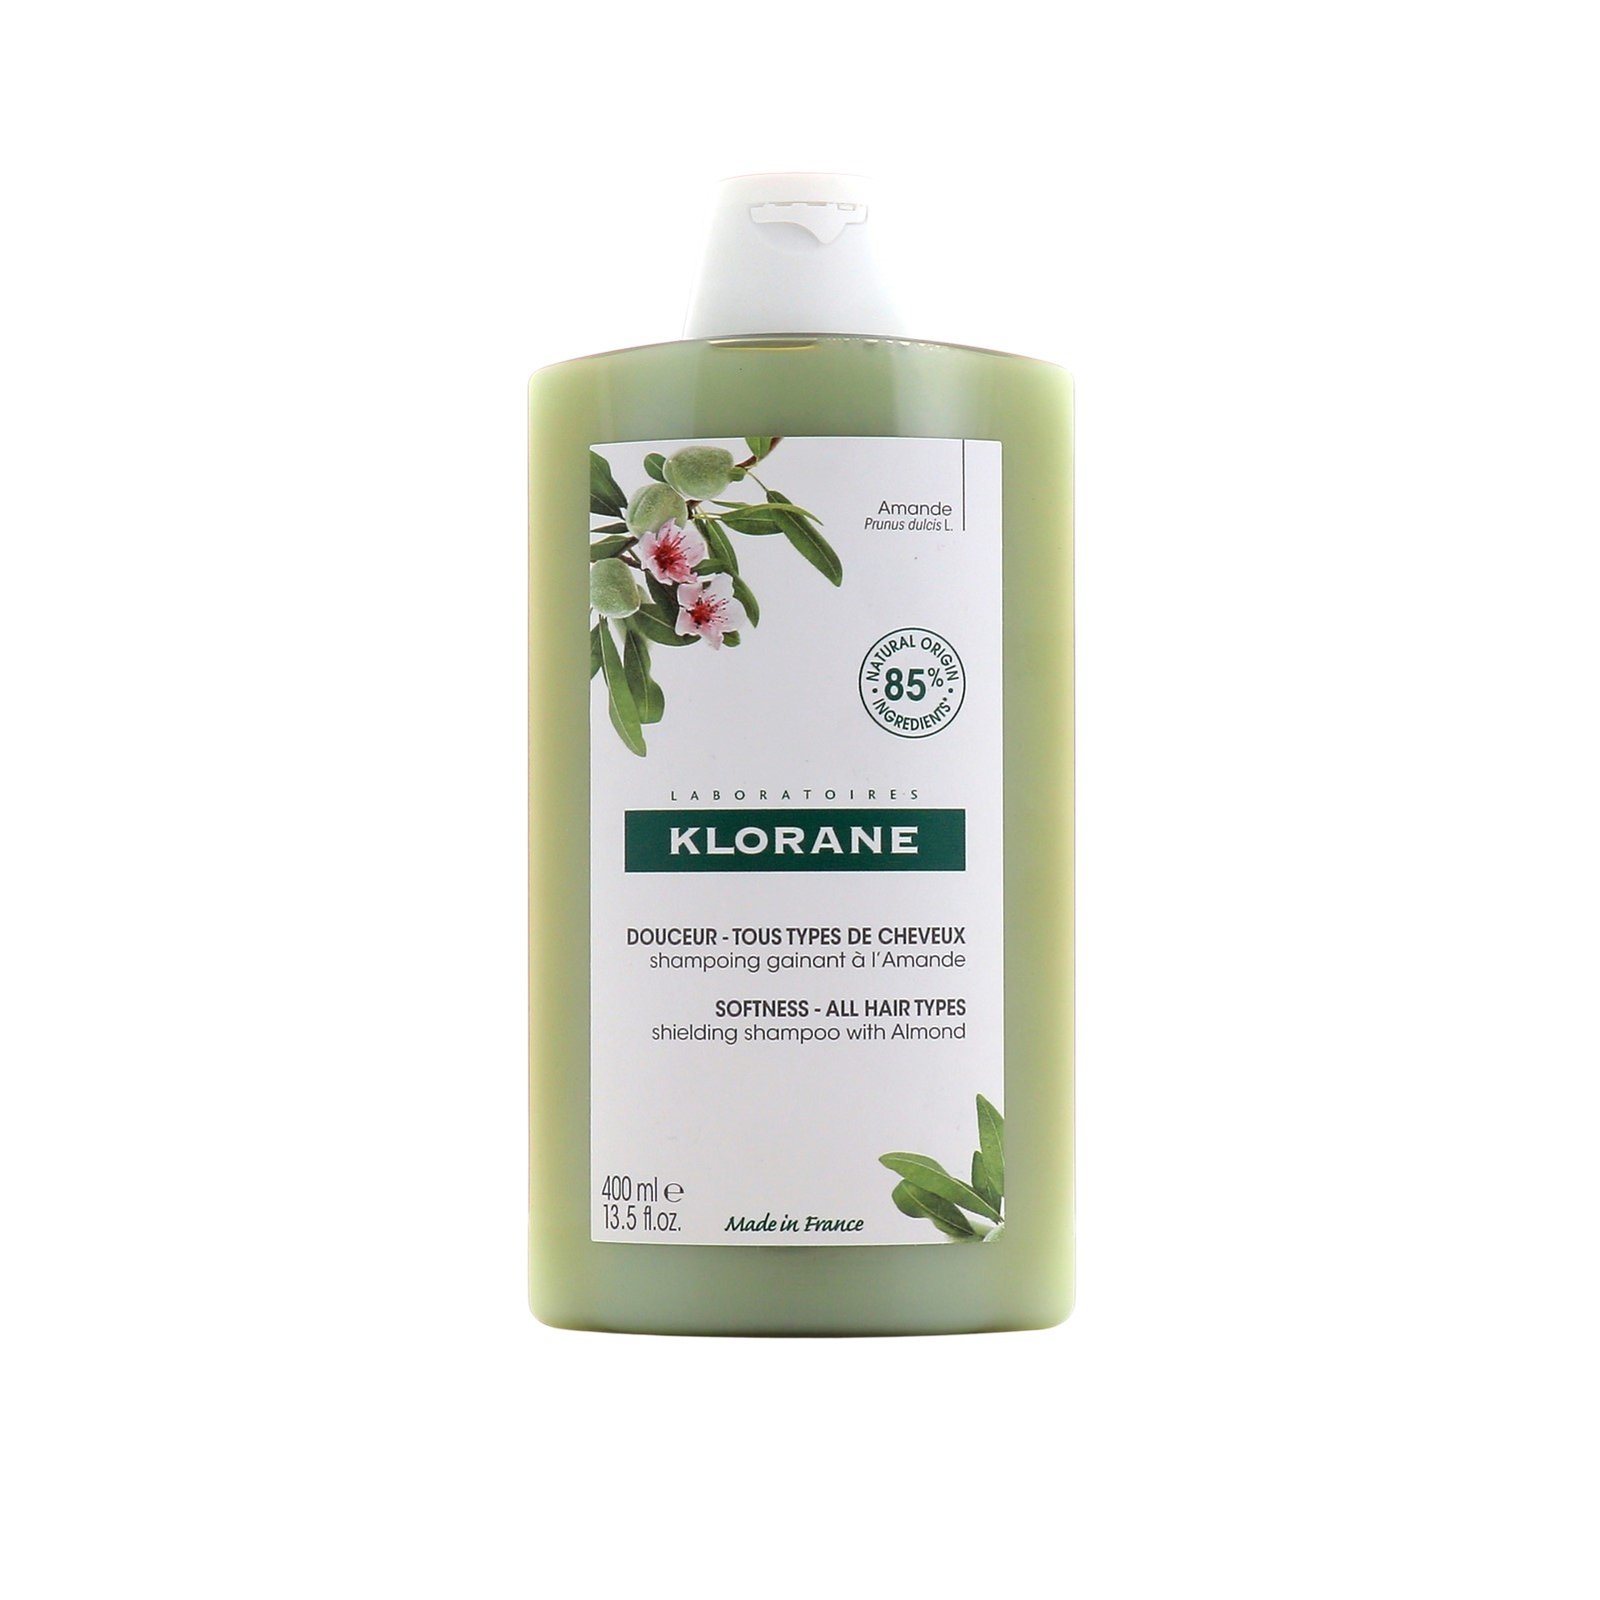 Klorane Softness Shielding Shampoo with Almond 400ml (13.5 fl oz)